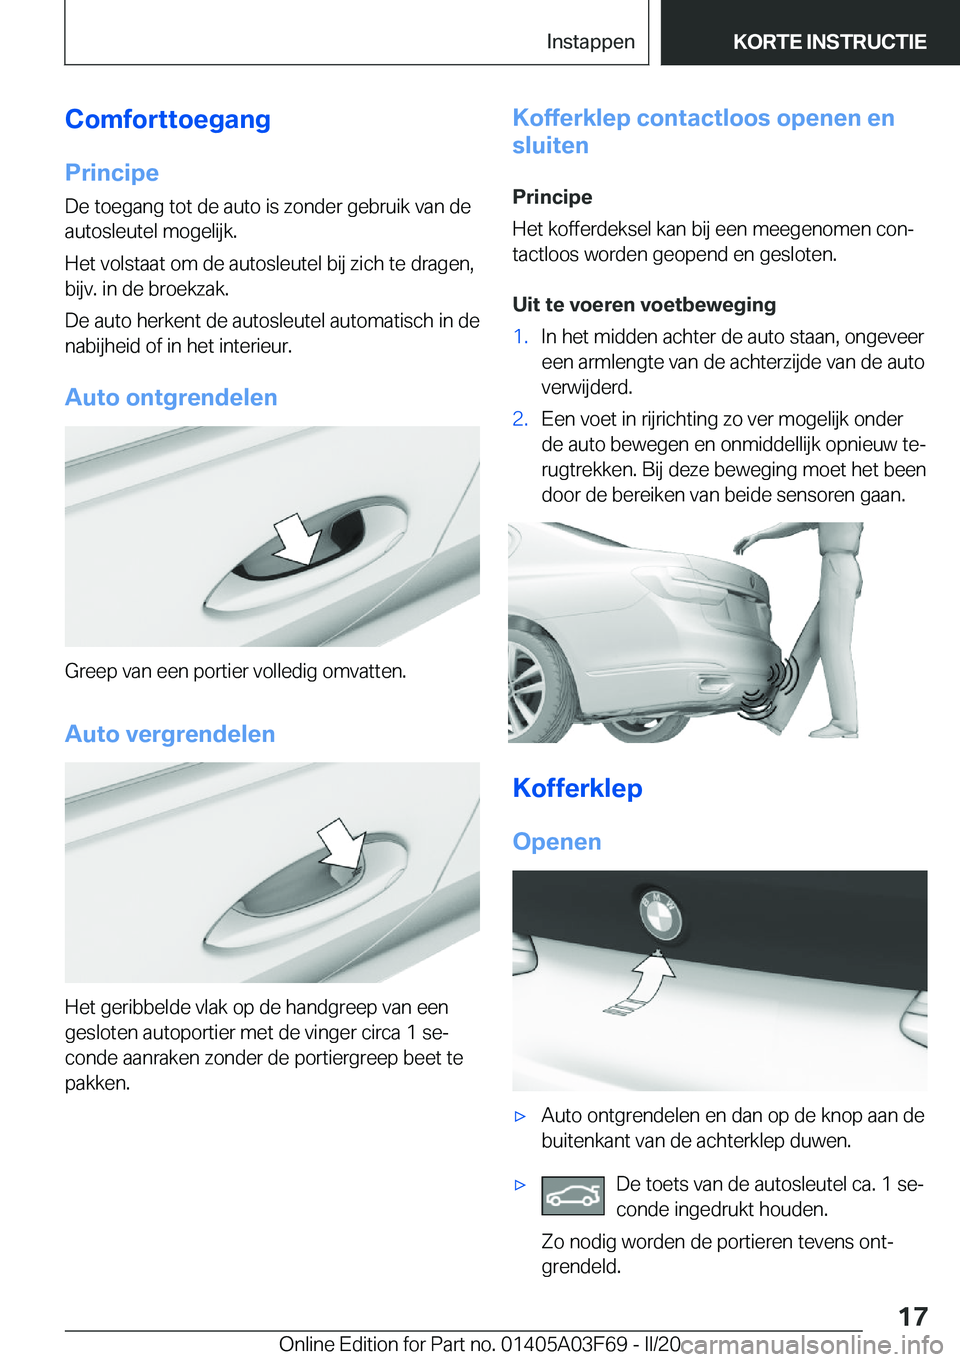 BMW 3 SERIES 2020  Instructieboekjes (in Dutch) �C�o�m�f�o�r�t�t�o�e�g�a�n�g
�P�r�i�n�c�i�p�e �D�e��t�o�e�g�a�n�g��t�o�t��d�e��a�u�t�o��i�s��z�o�n�d�e�r��g�e�b�r�u�i�k��v�a�n��d�e
�a�u�t�o�s�l�e�u�t�e�l��m�o�g�e�l�i�j�k�.
�H�e�t��v�o�l�s